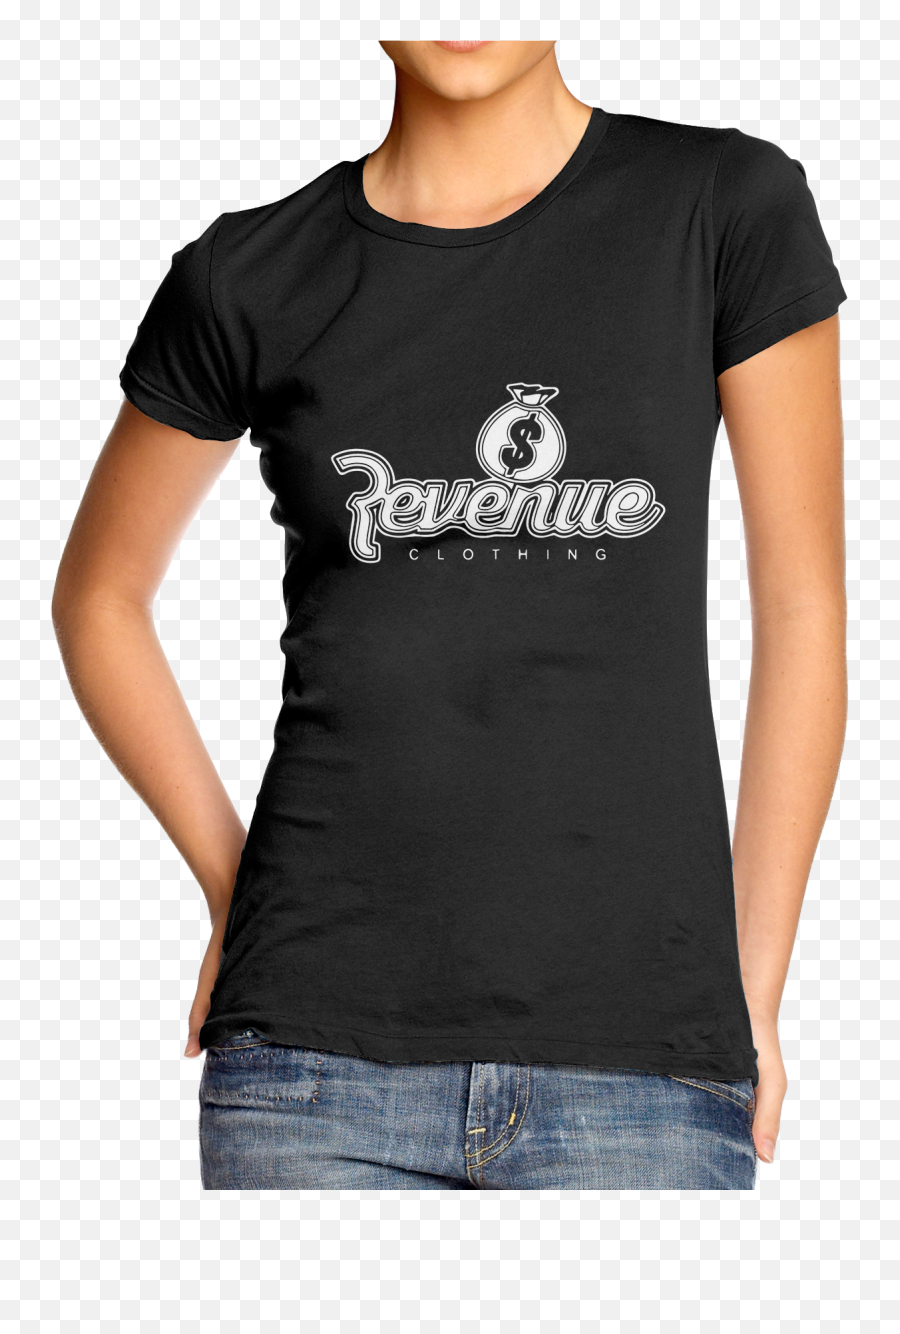 Revenue Clothing Logo Black Tee Emoji,Clothing Logo